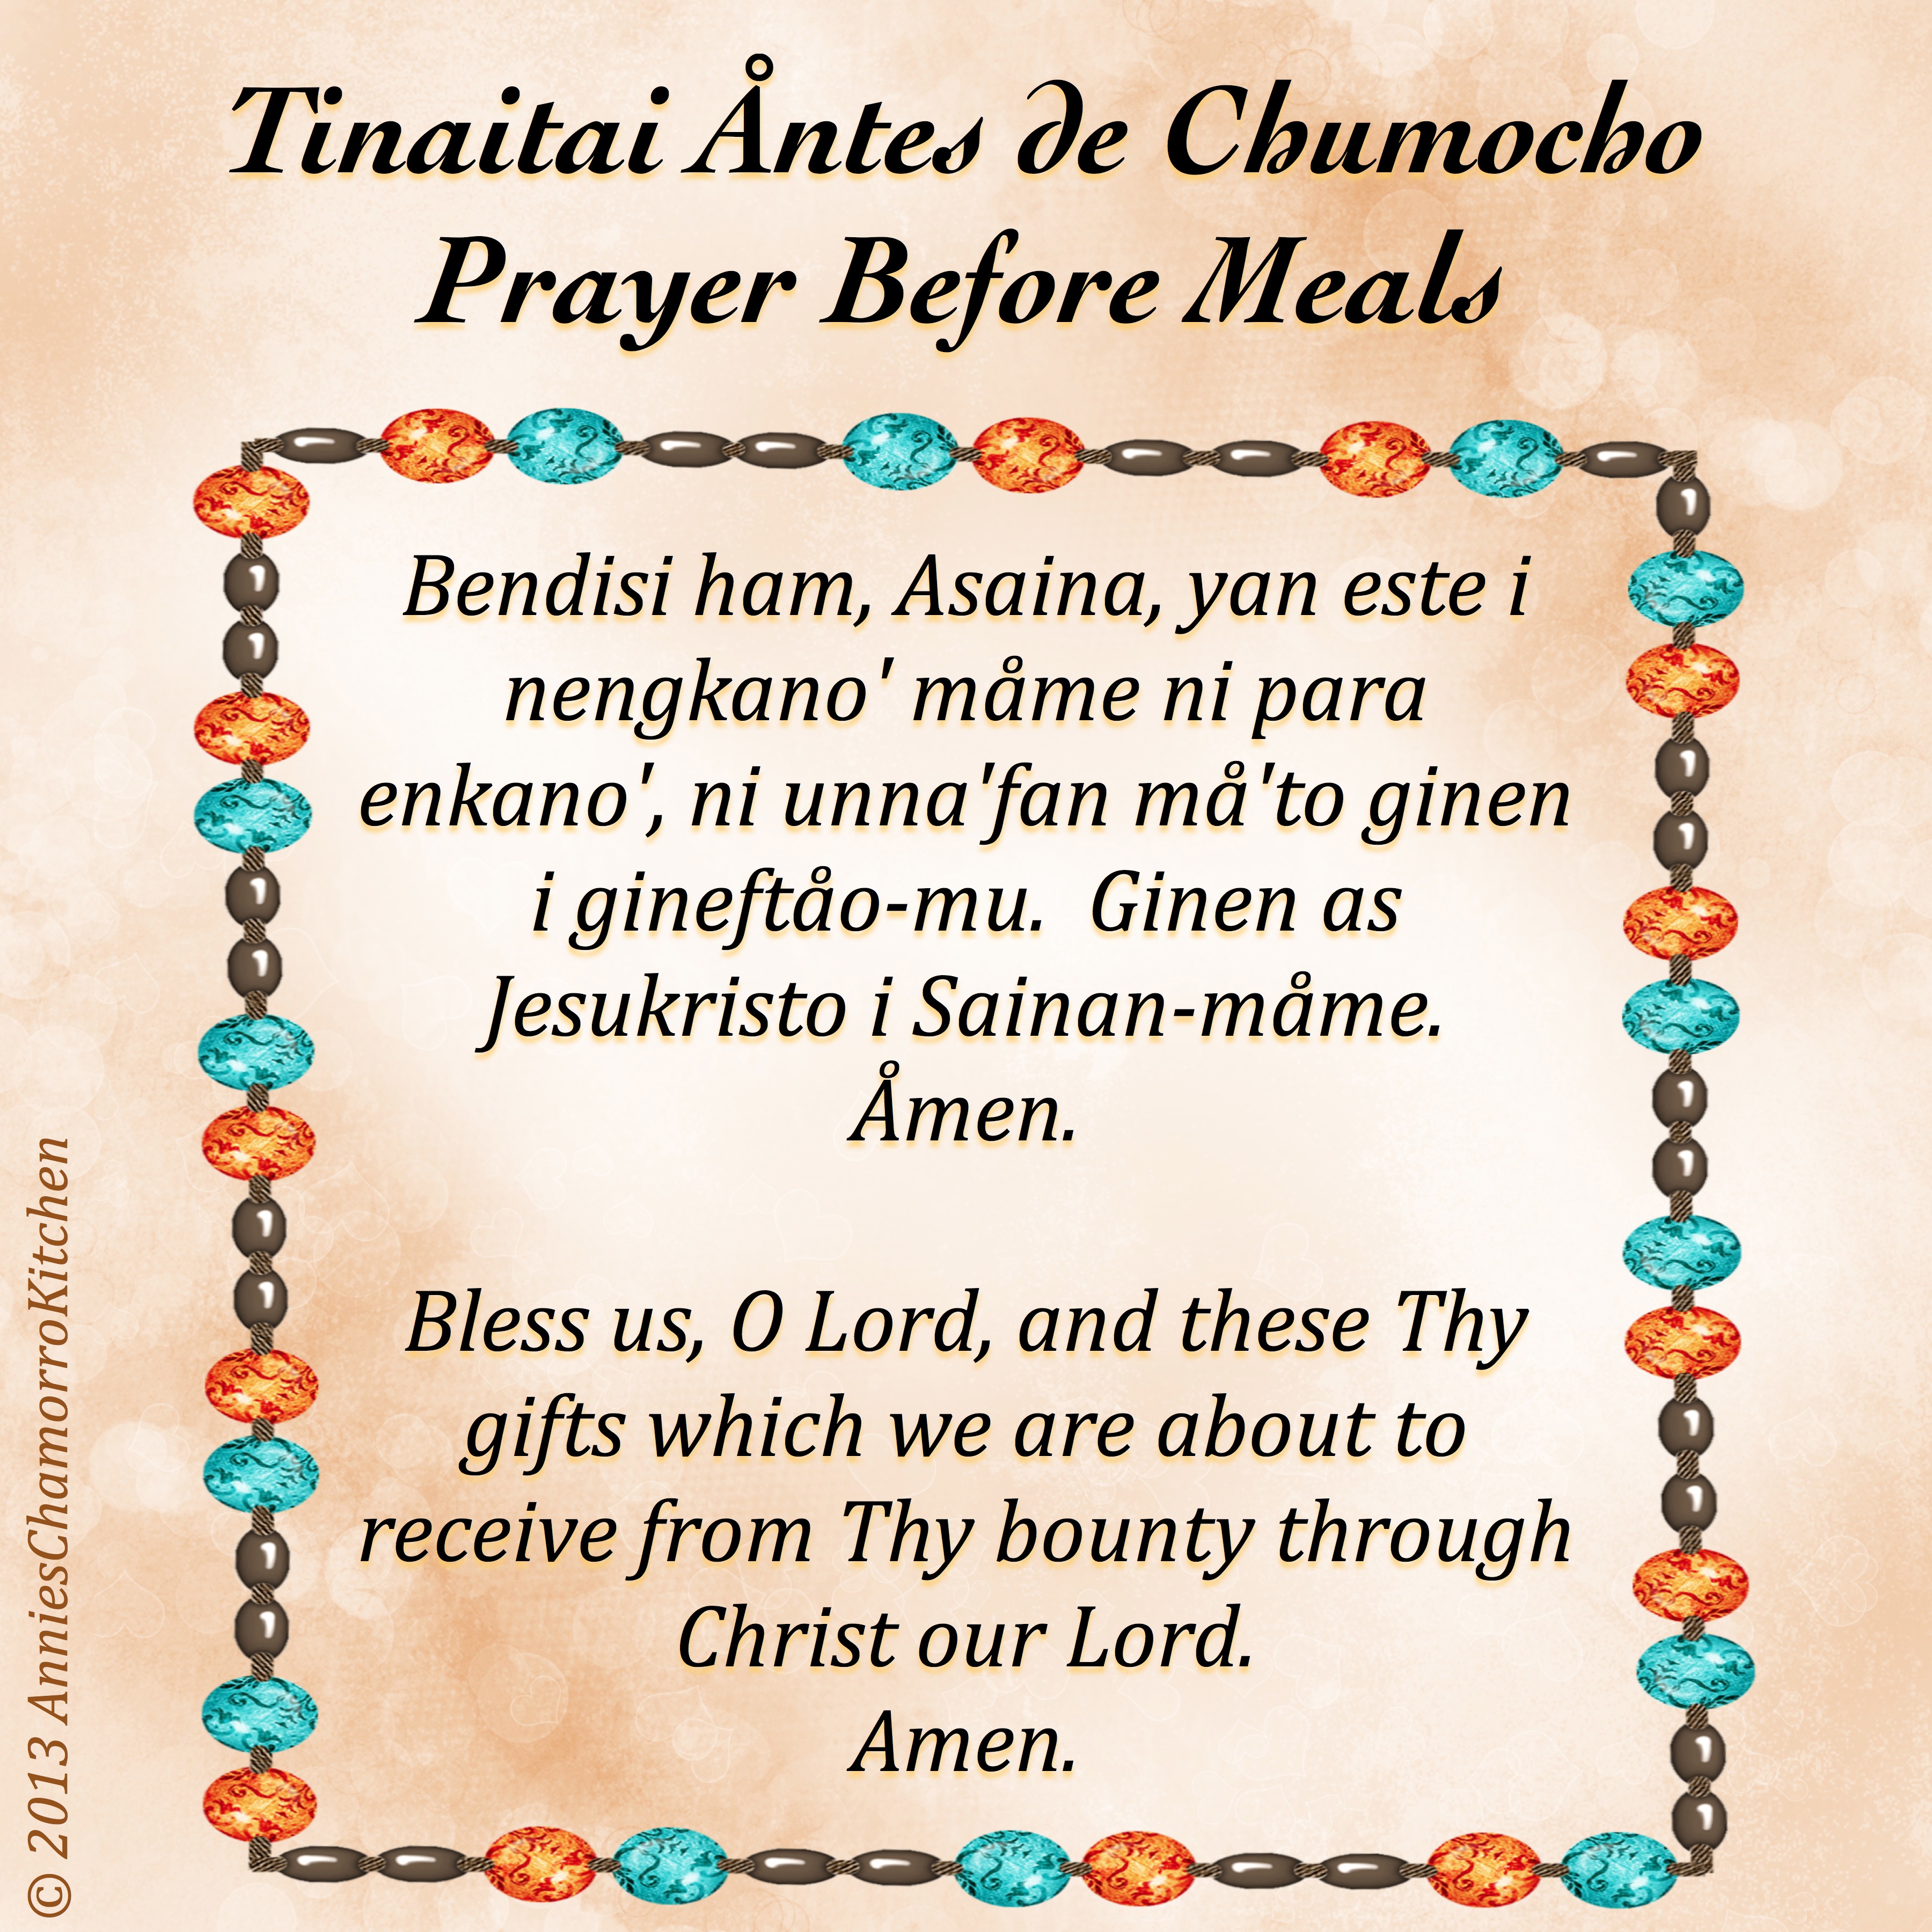 Prayer Before Meals ~ Tinaitai Åntes de Chumocho | Annie's Chamorro ...